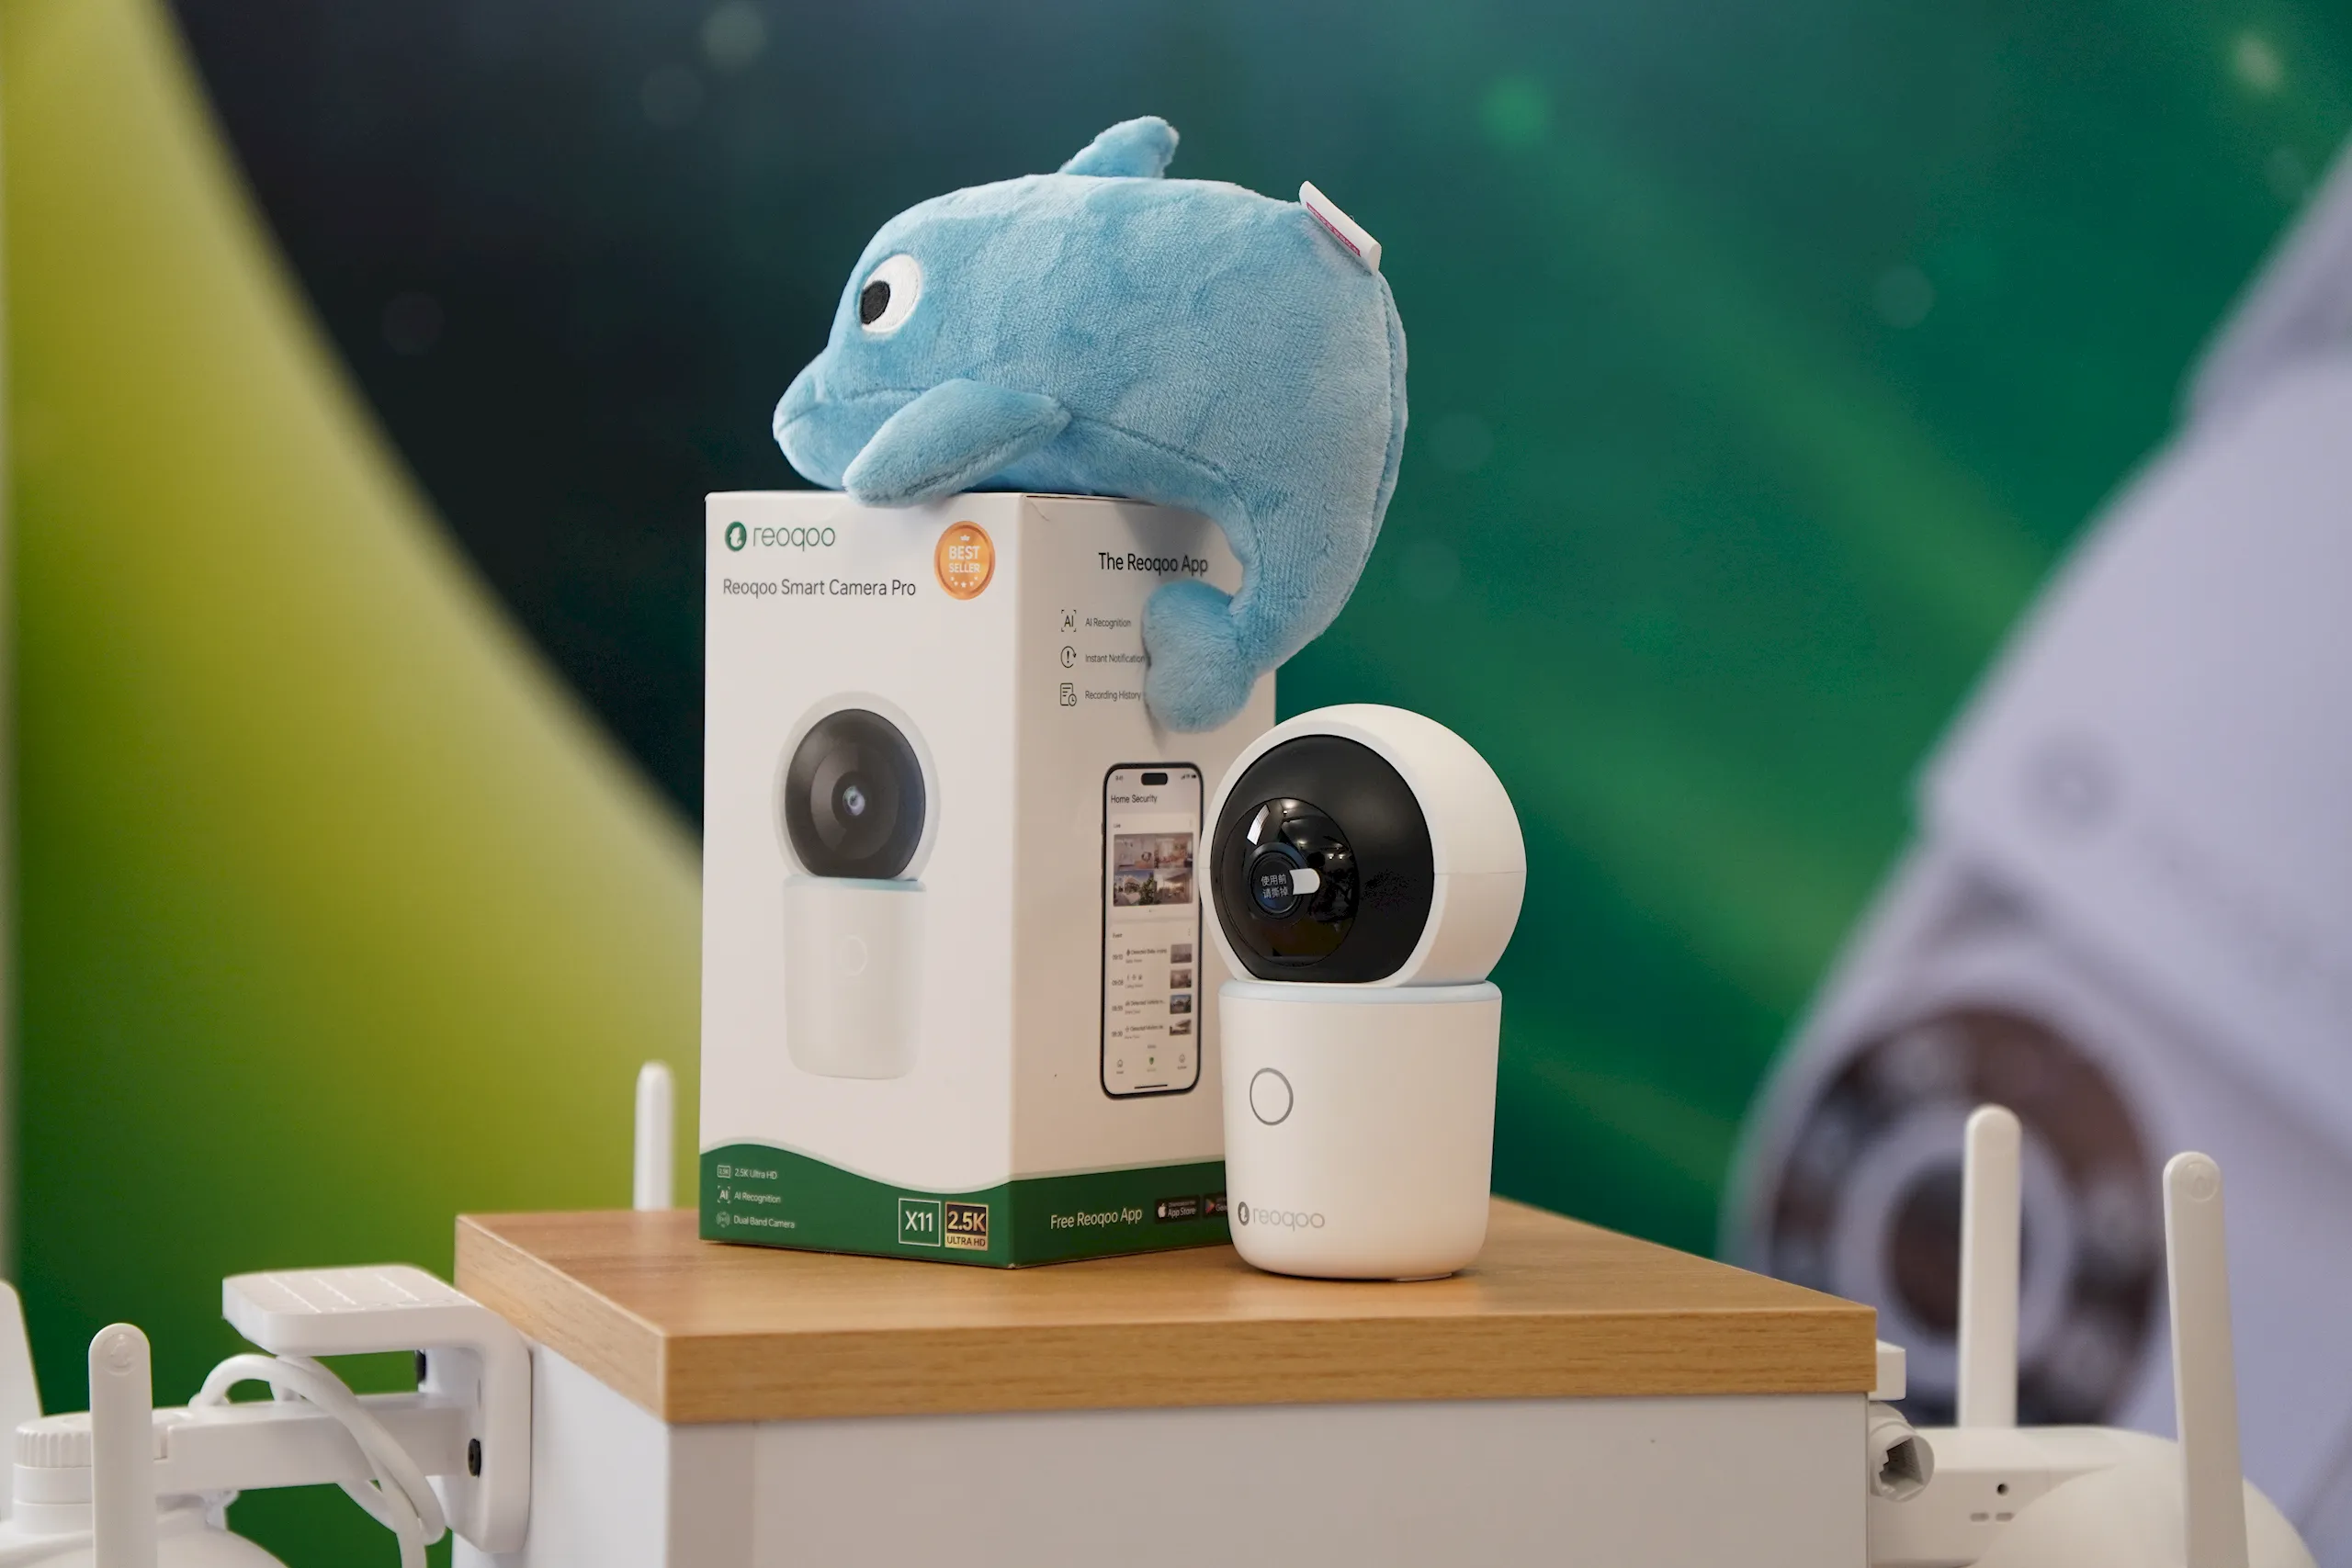 Reoqoo ra mắt camera WIFI an ninh hỗ trợ AI, giá từ 650,000 VND